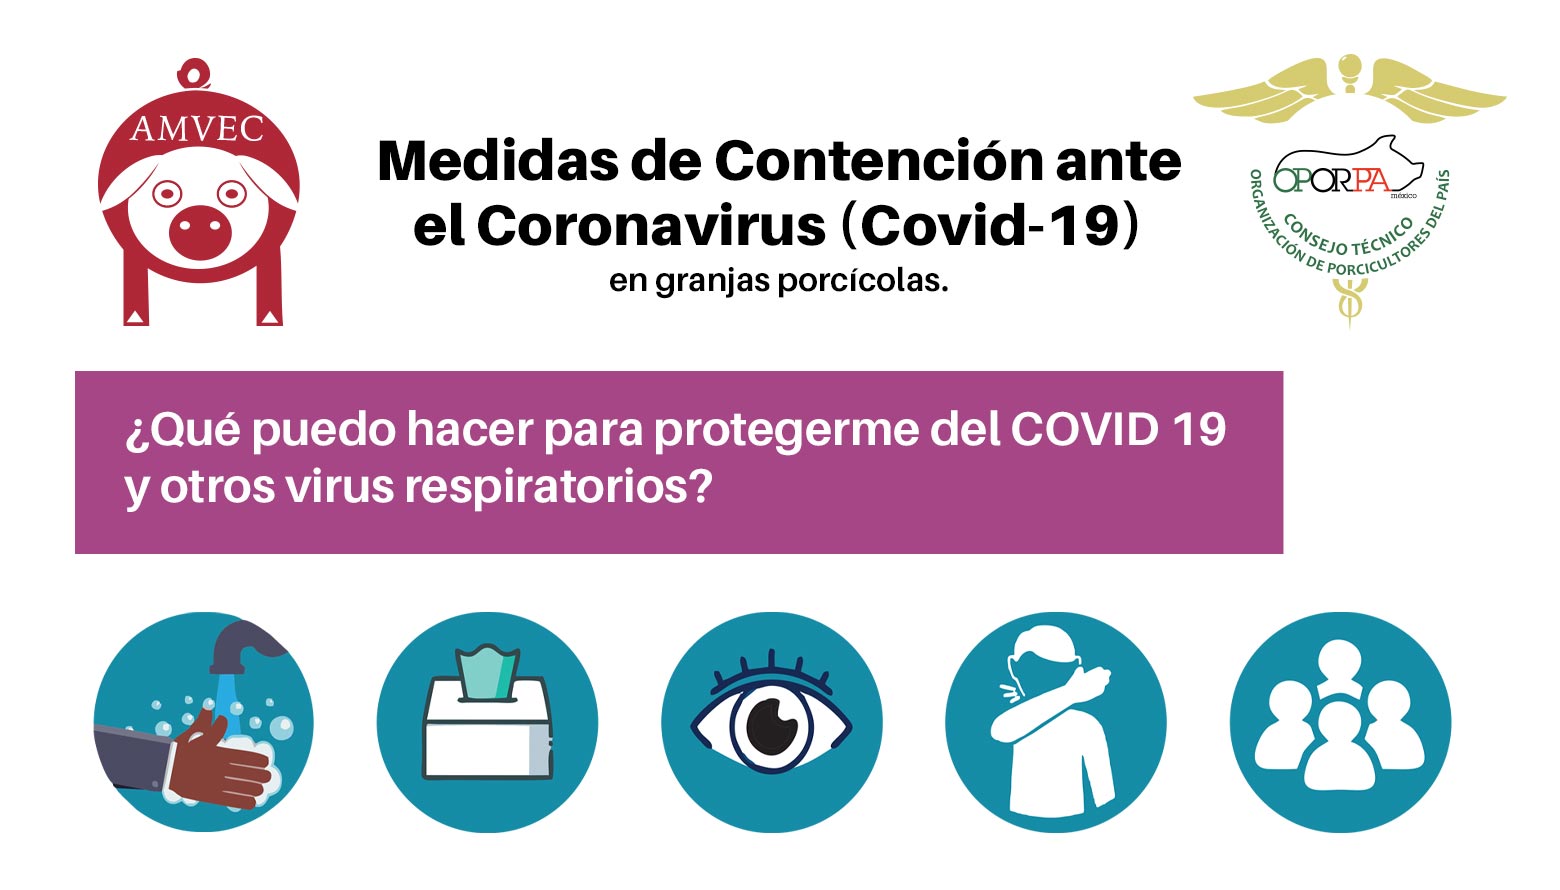 Cartel: Medidas de Contención ante el Coronavirus (Covid-19) en granjas porcícolas